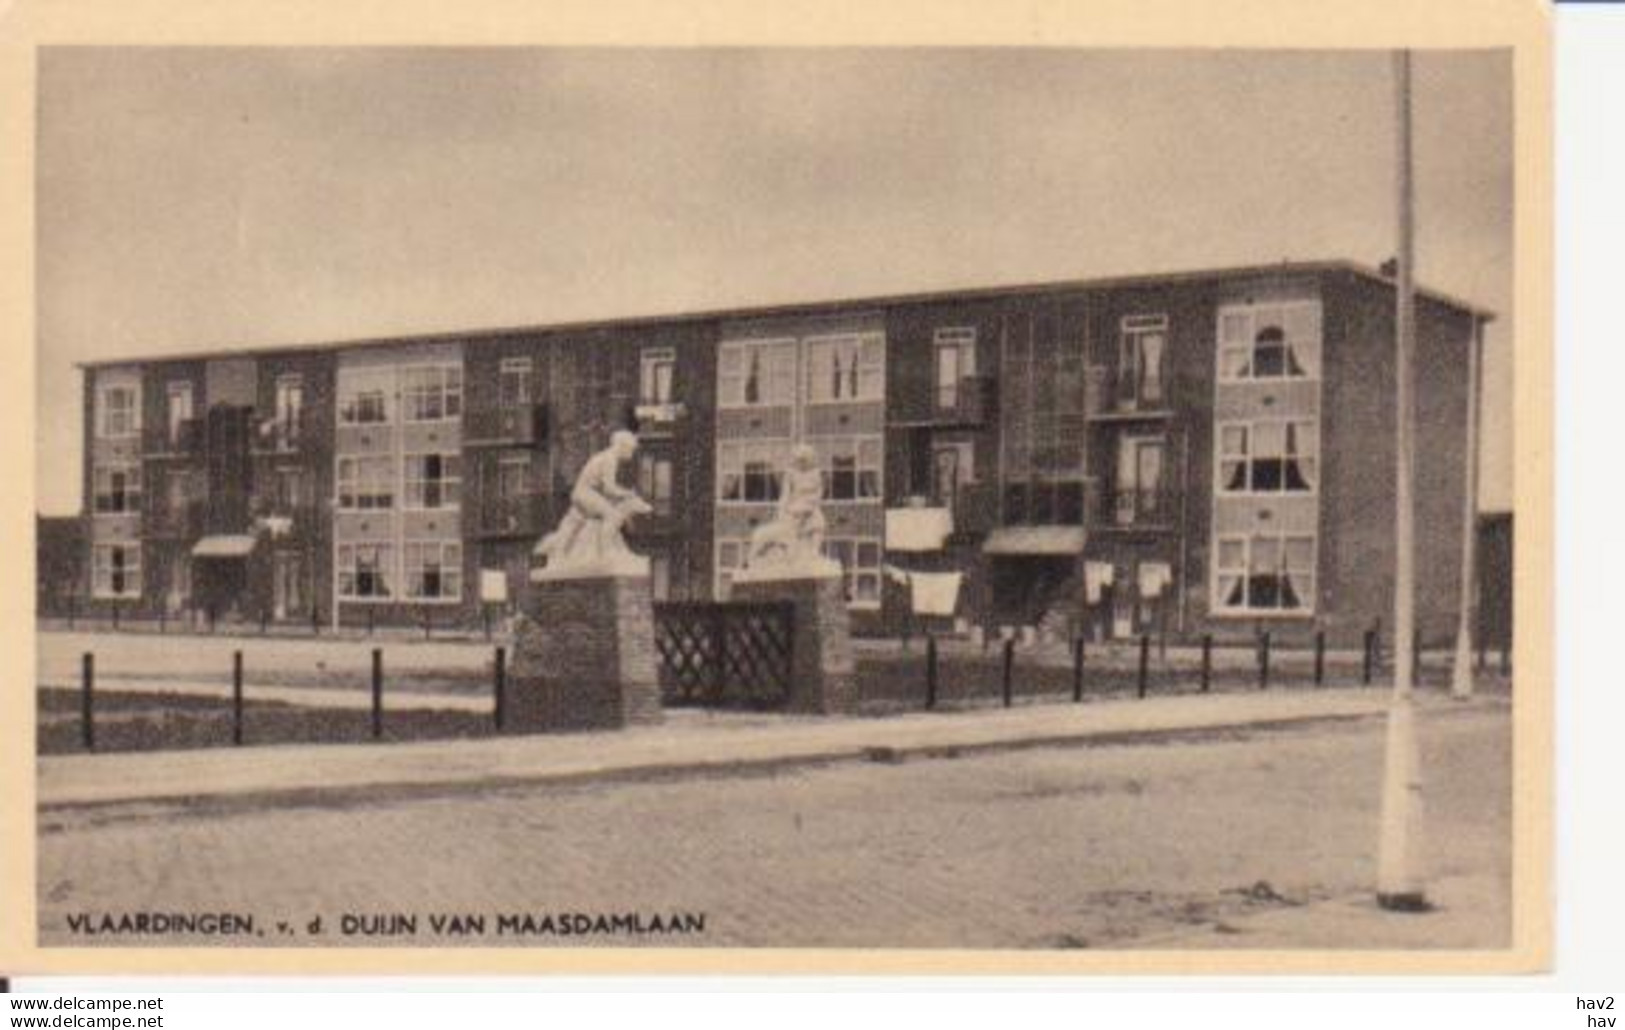 Vlaardingen V.d. Duijn-van Maasdamlaan RY12533 - Vlaardingen